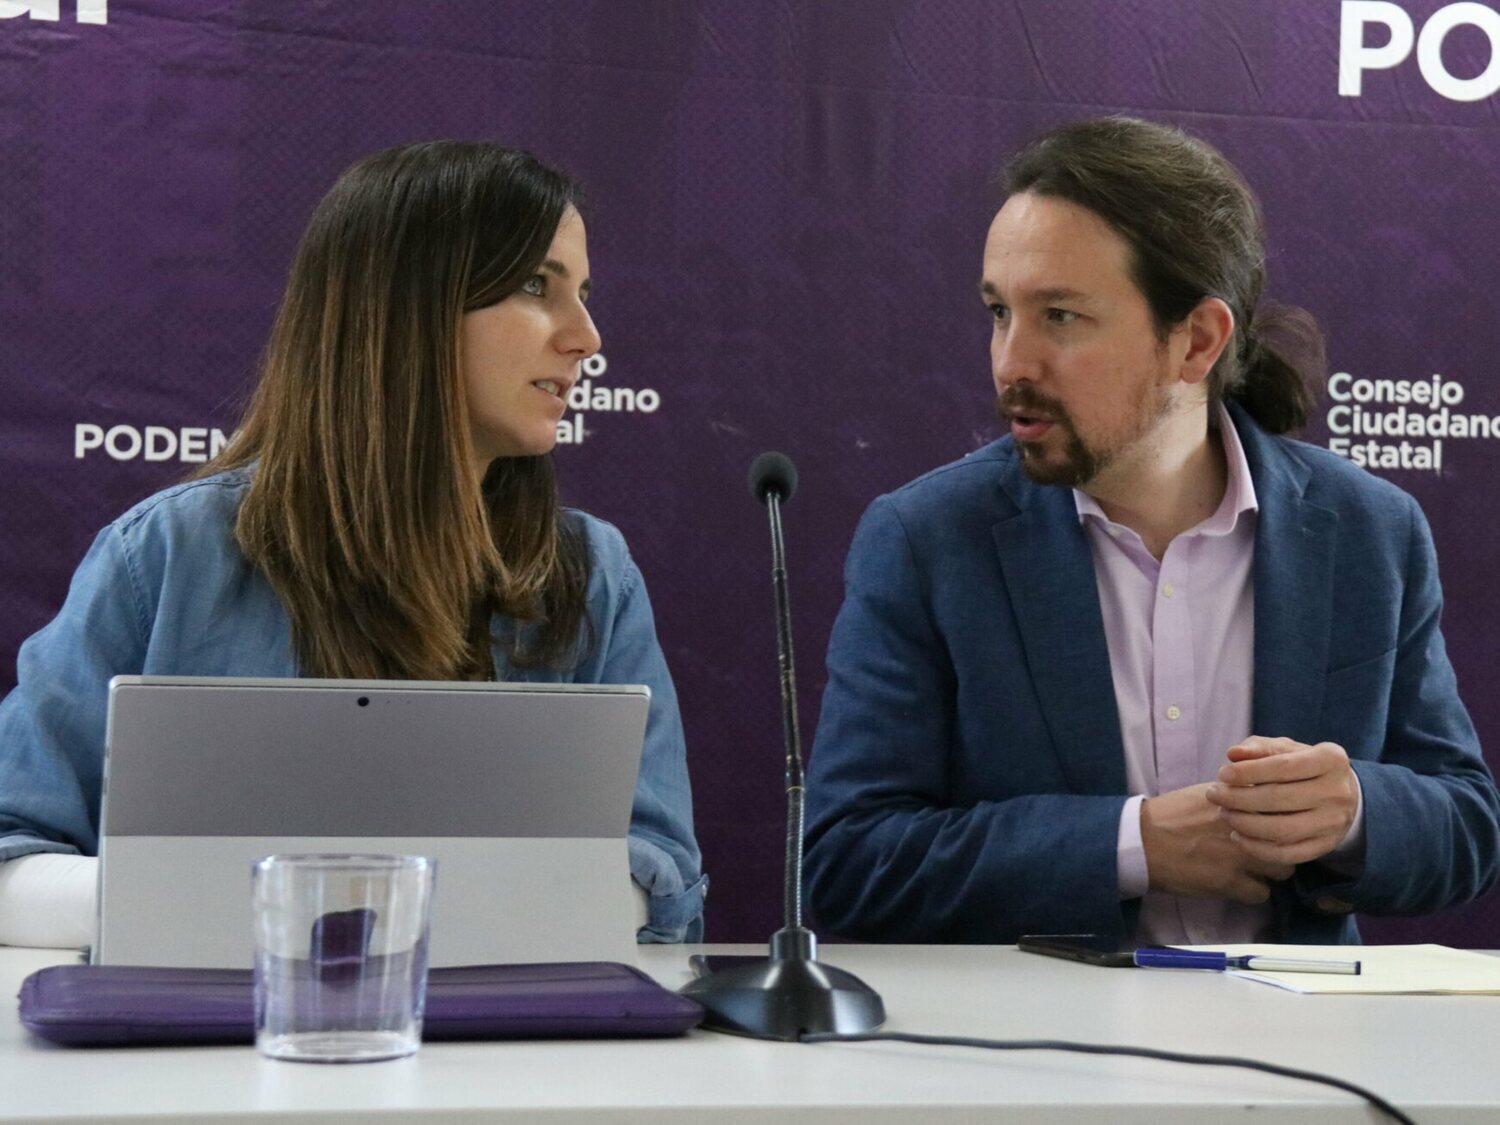 La Justicia ratifica que no hubo delito en la Caja de Solidaridad de Podemos